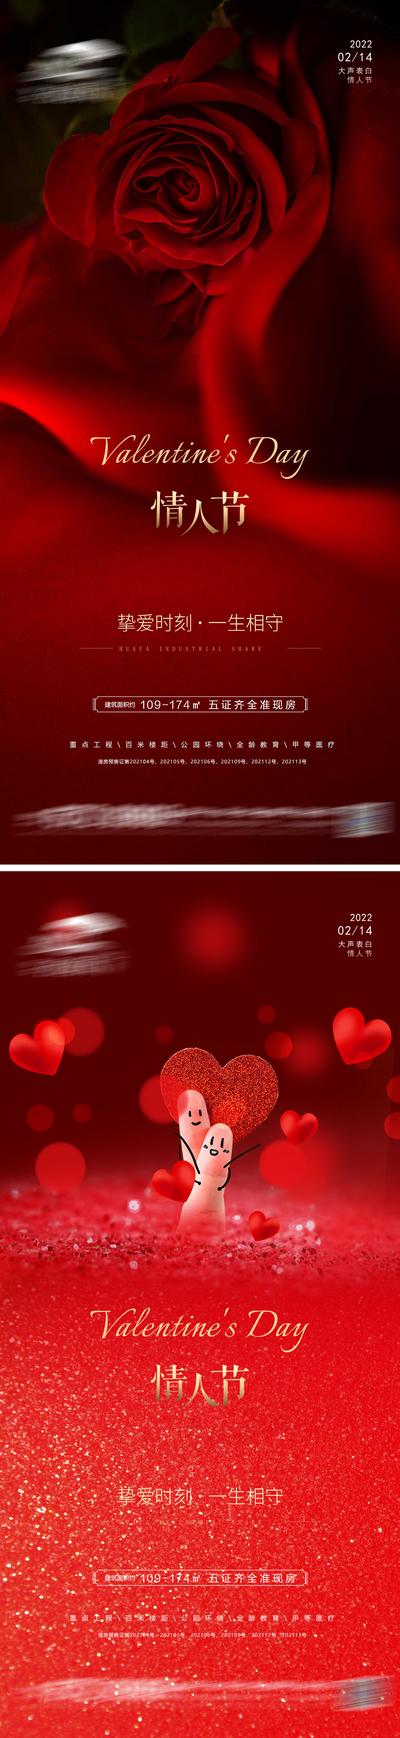 南门网 海报 地产 公历节日 情人节 2.14 爱心 玫瑰